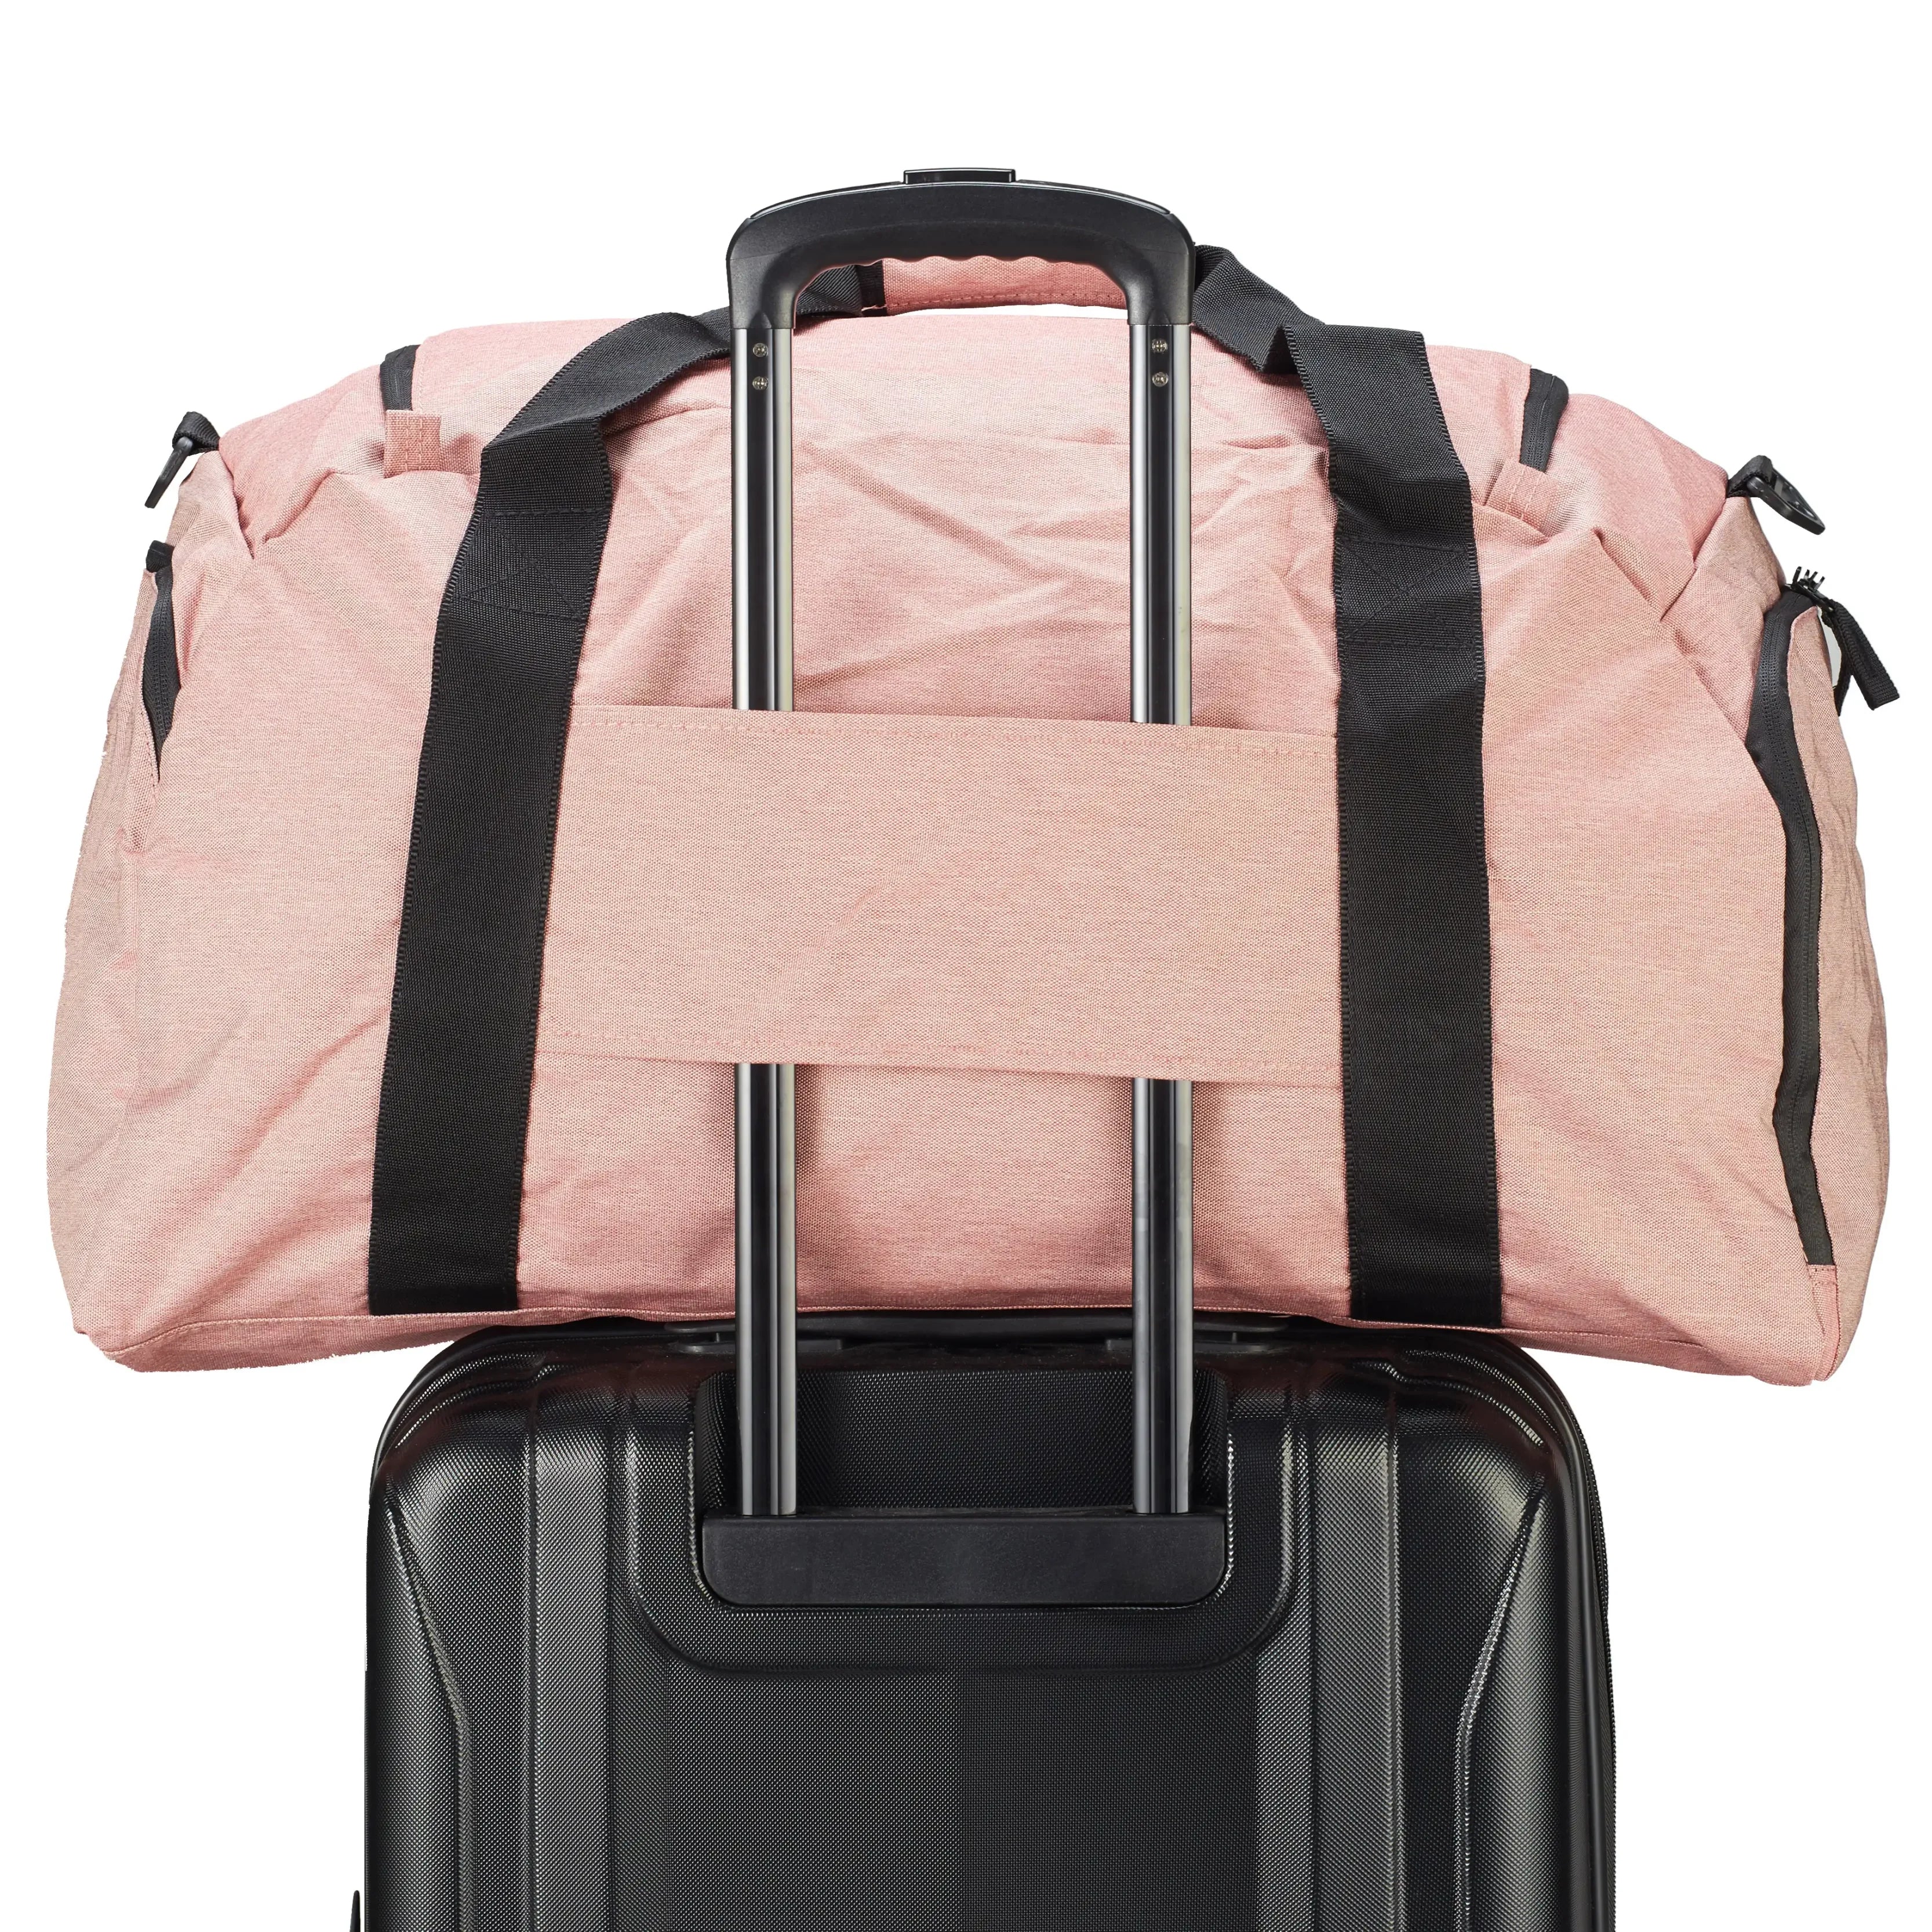 koffer-direkt.de Travel bag L 62 cm - black